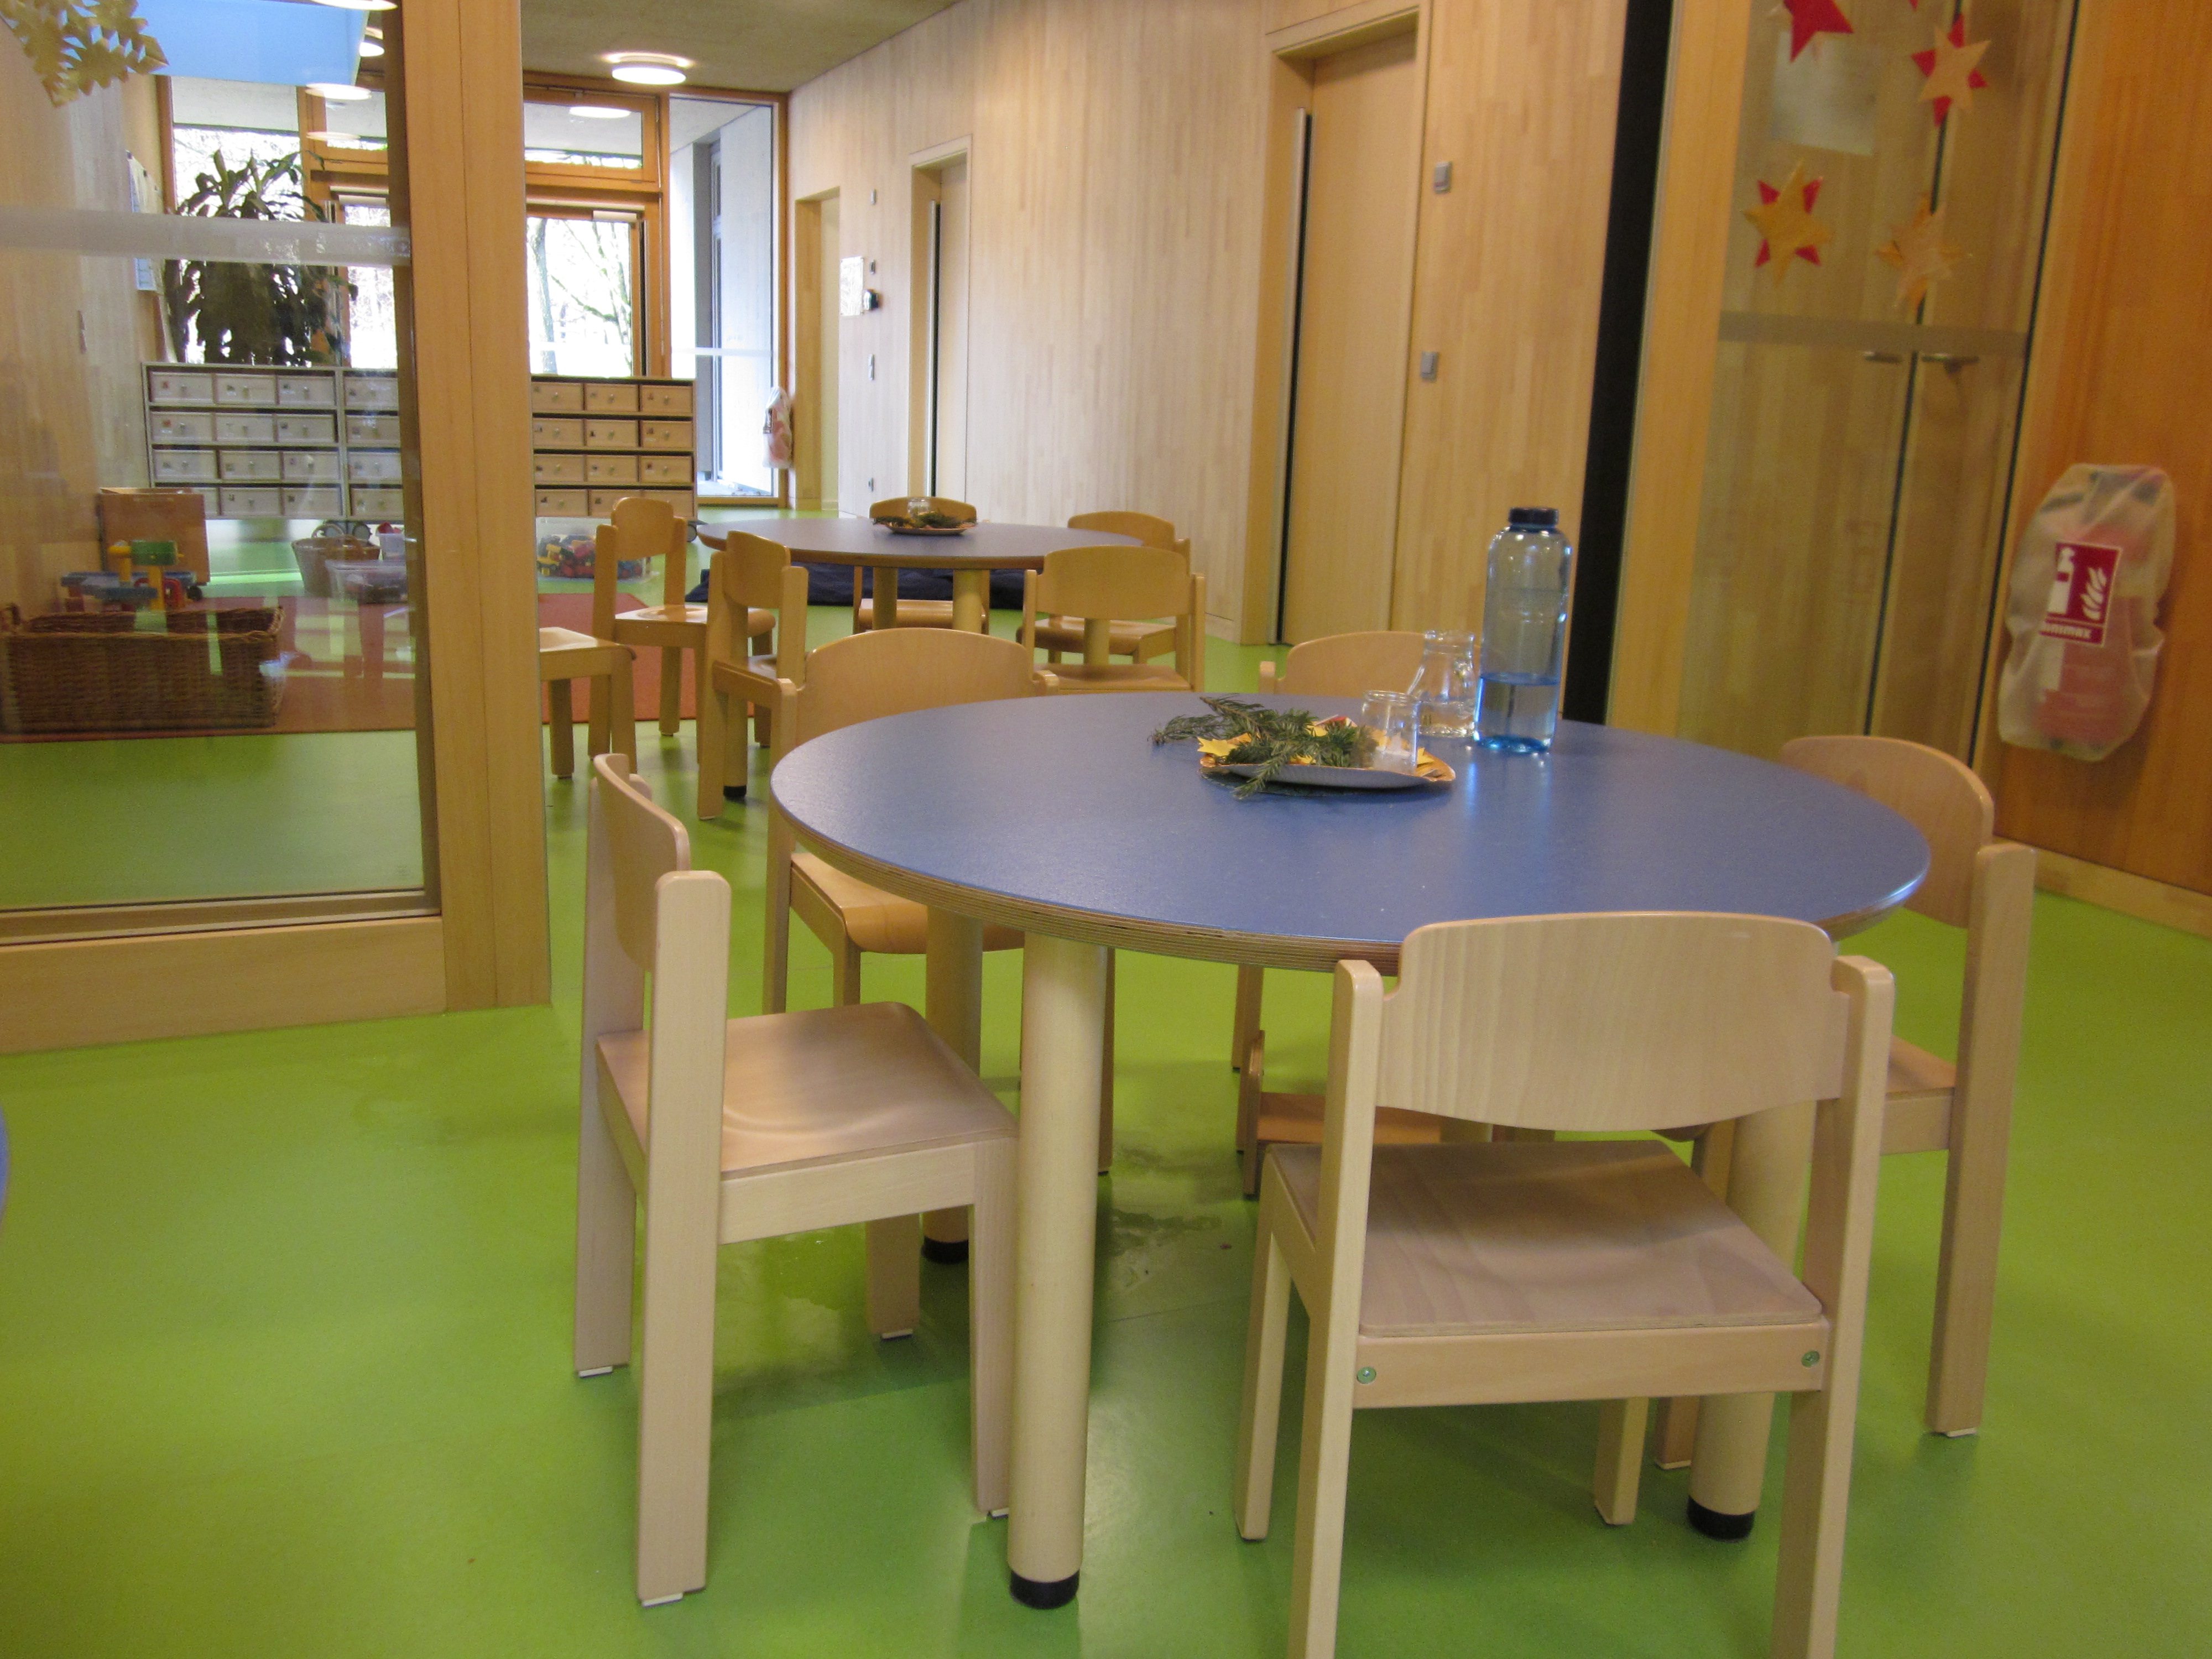 Hier ist der Essbereich zu sehen. Die Tische sind rund mit jeweils fünf Stühlen.